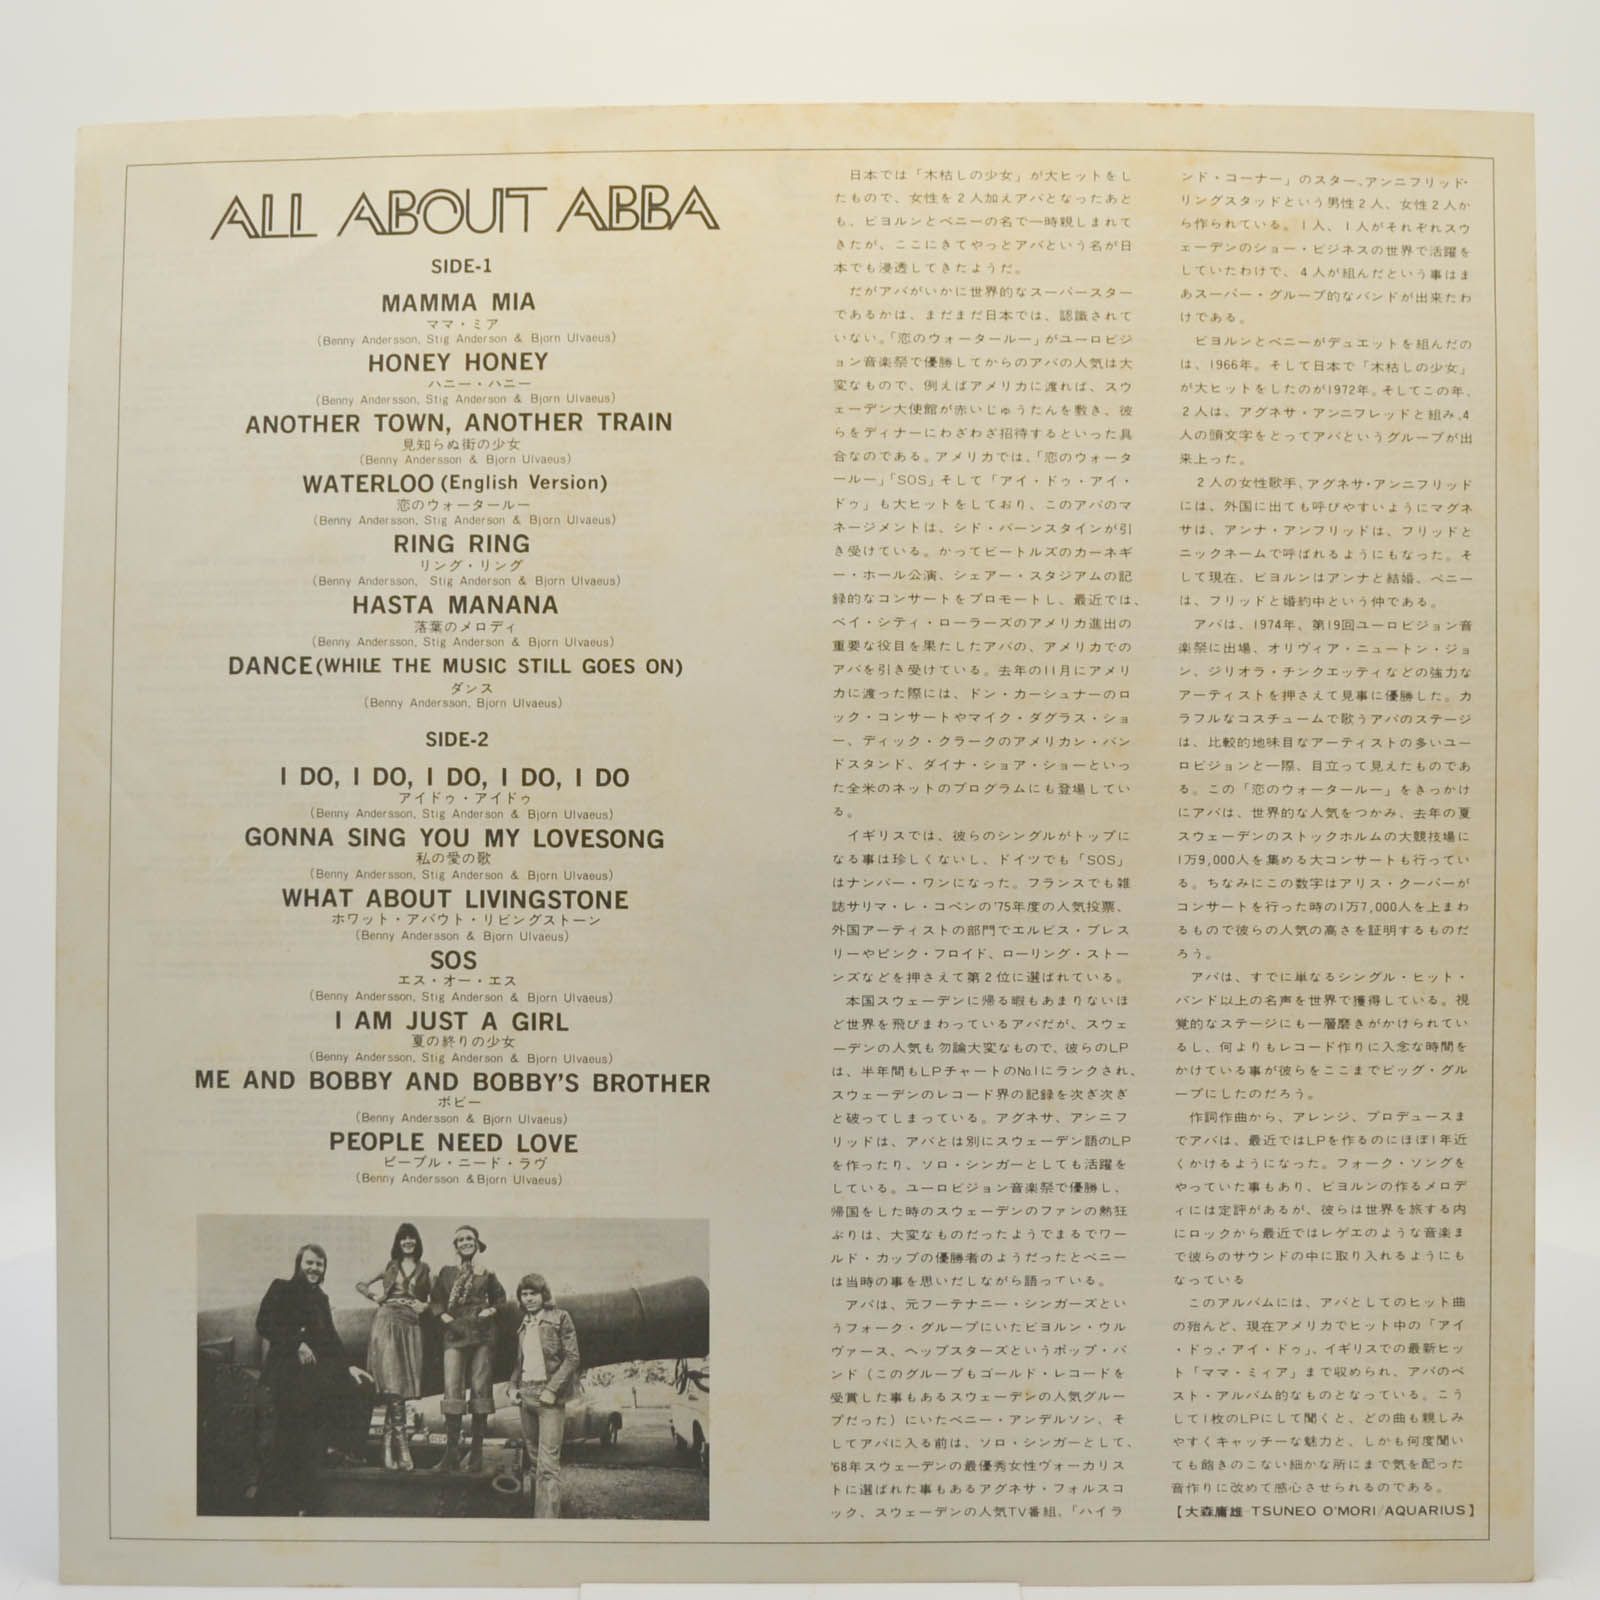 ABBA — All About ABBA / Mamma Mia, 1976